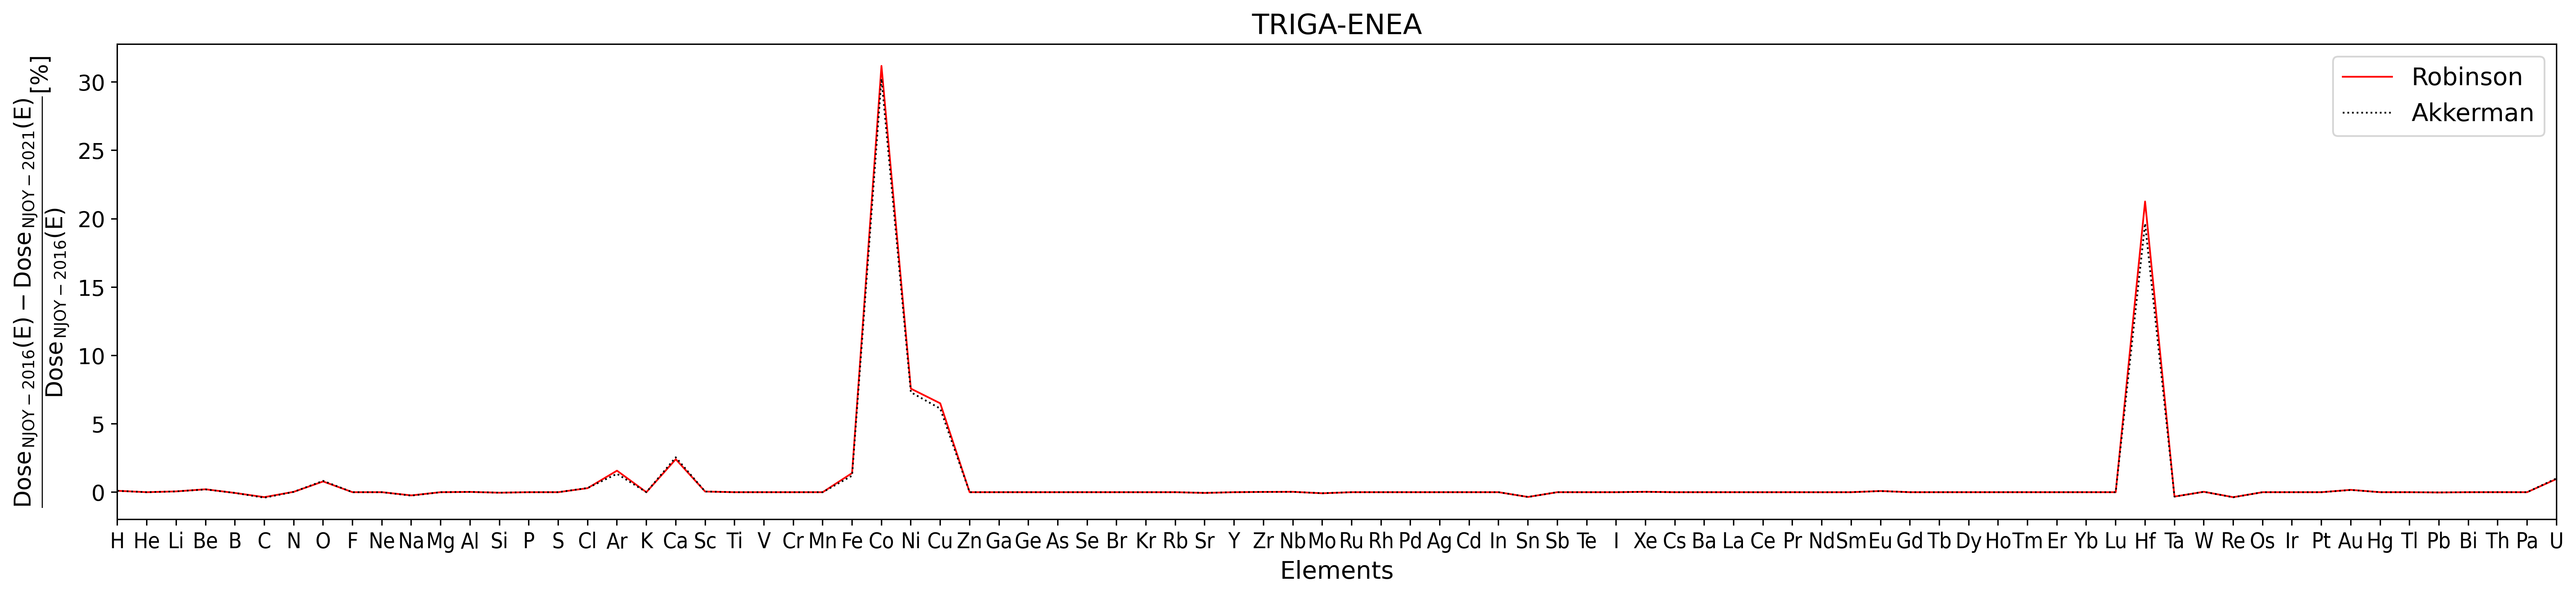 TRIGA1